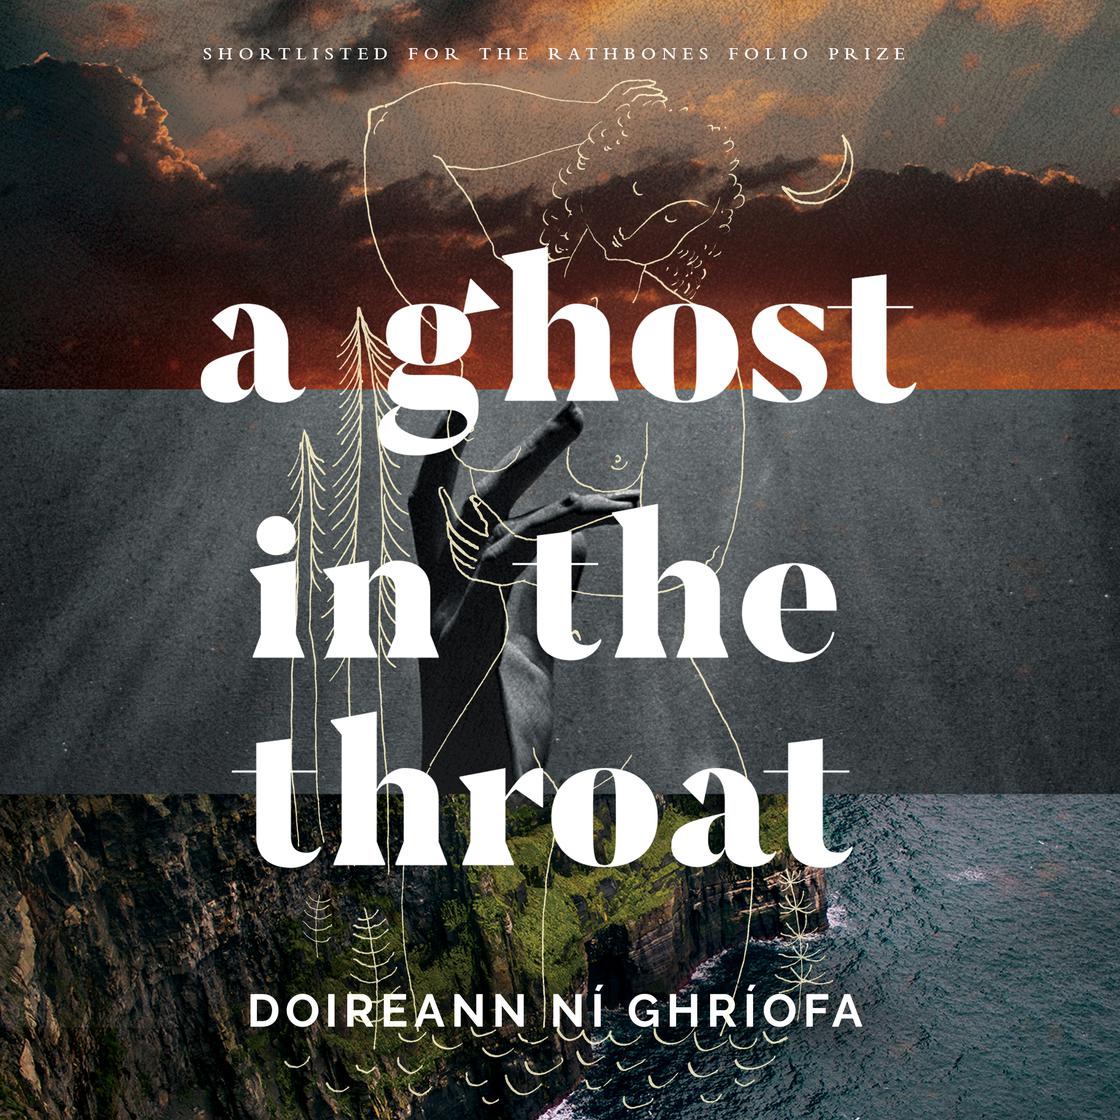 Doireann Ní Ghríofa: A Ghost in the Throat (AudiobookFormat, 2021, HighBridge)